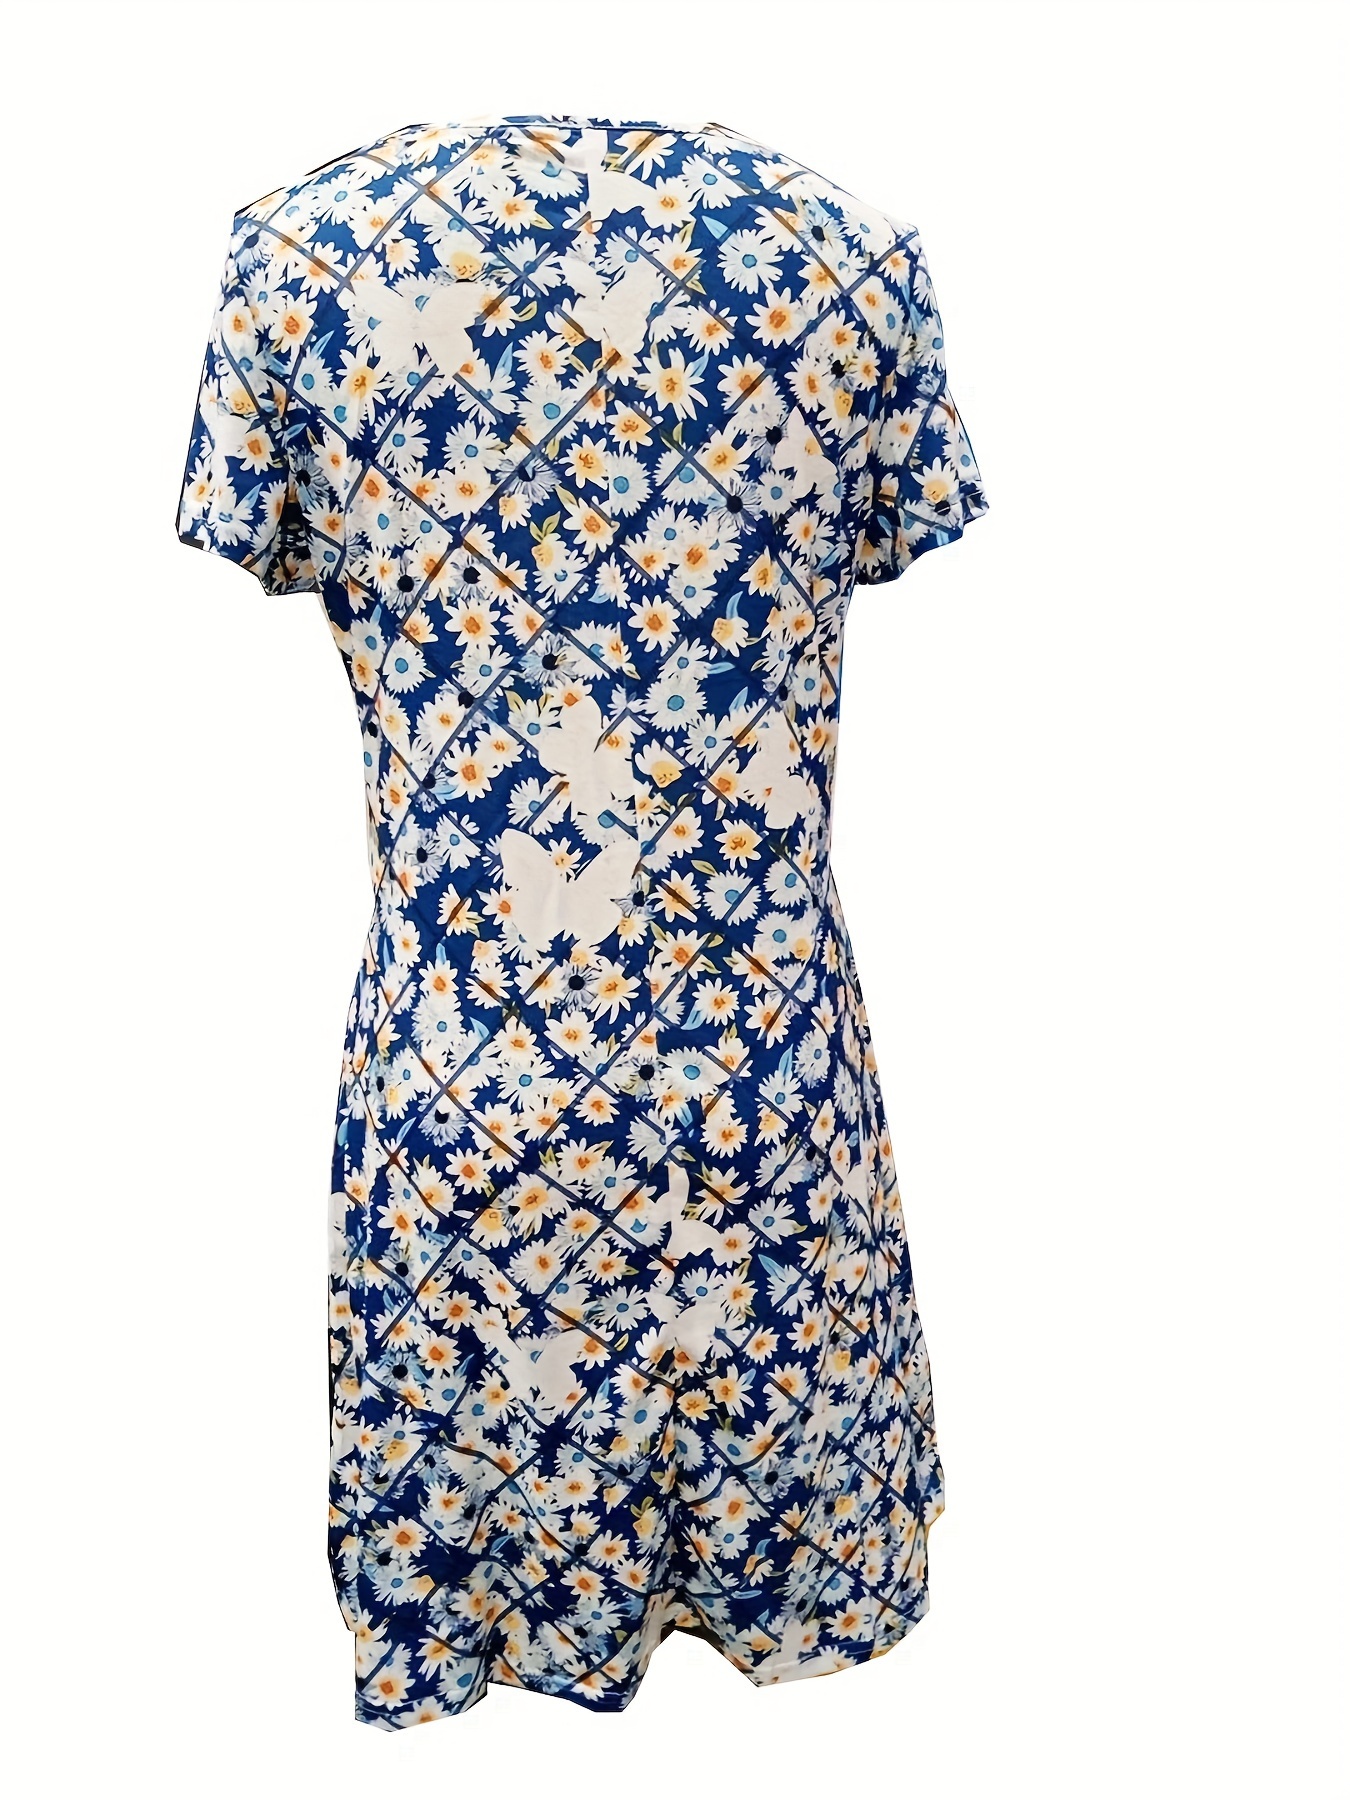 Плаття з квітковим принтом, елегантне плаття з коротким рукавом для весни та літа, жіночий одяг